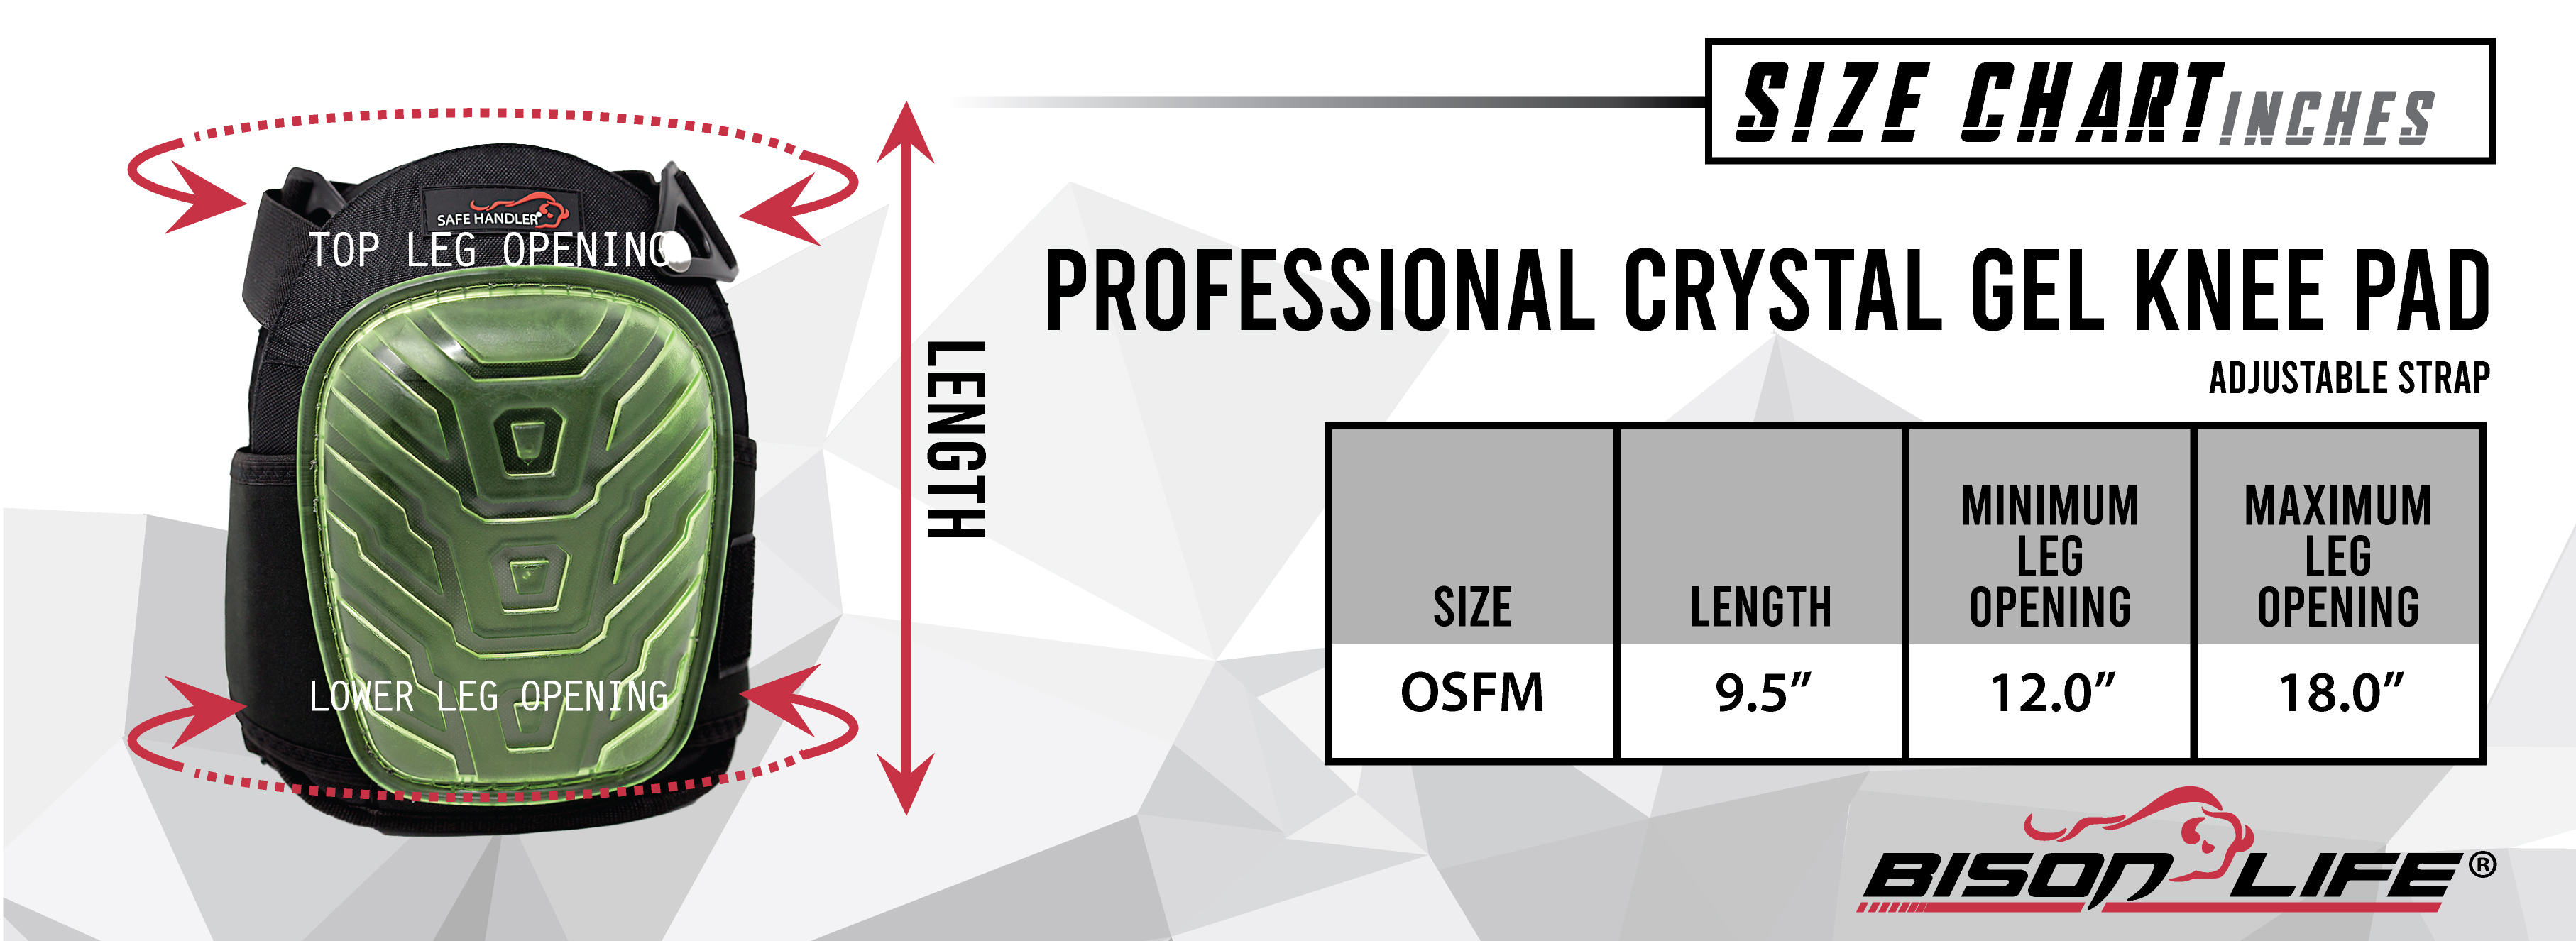 Safe Handler Professional Crystal Gel Knee Pads Size Chart